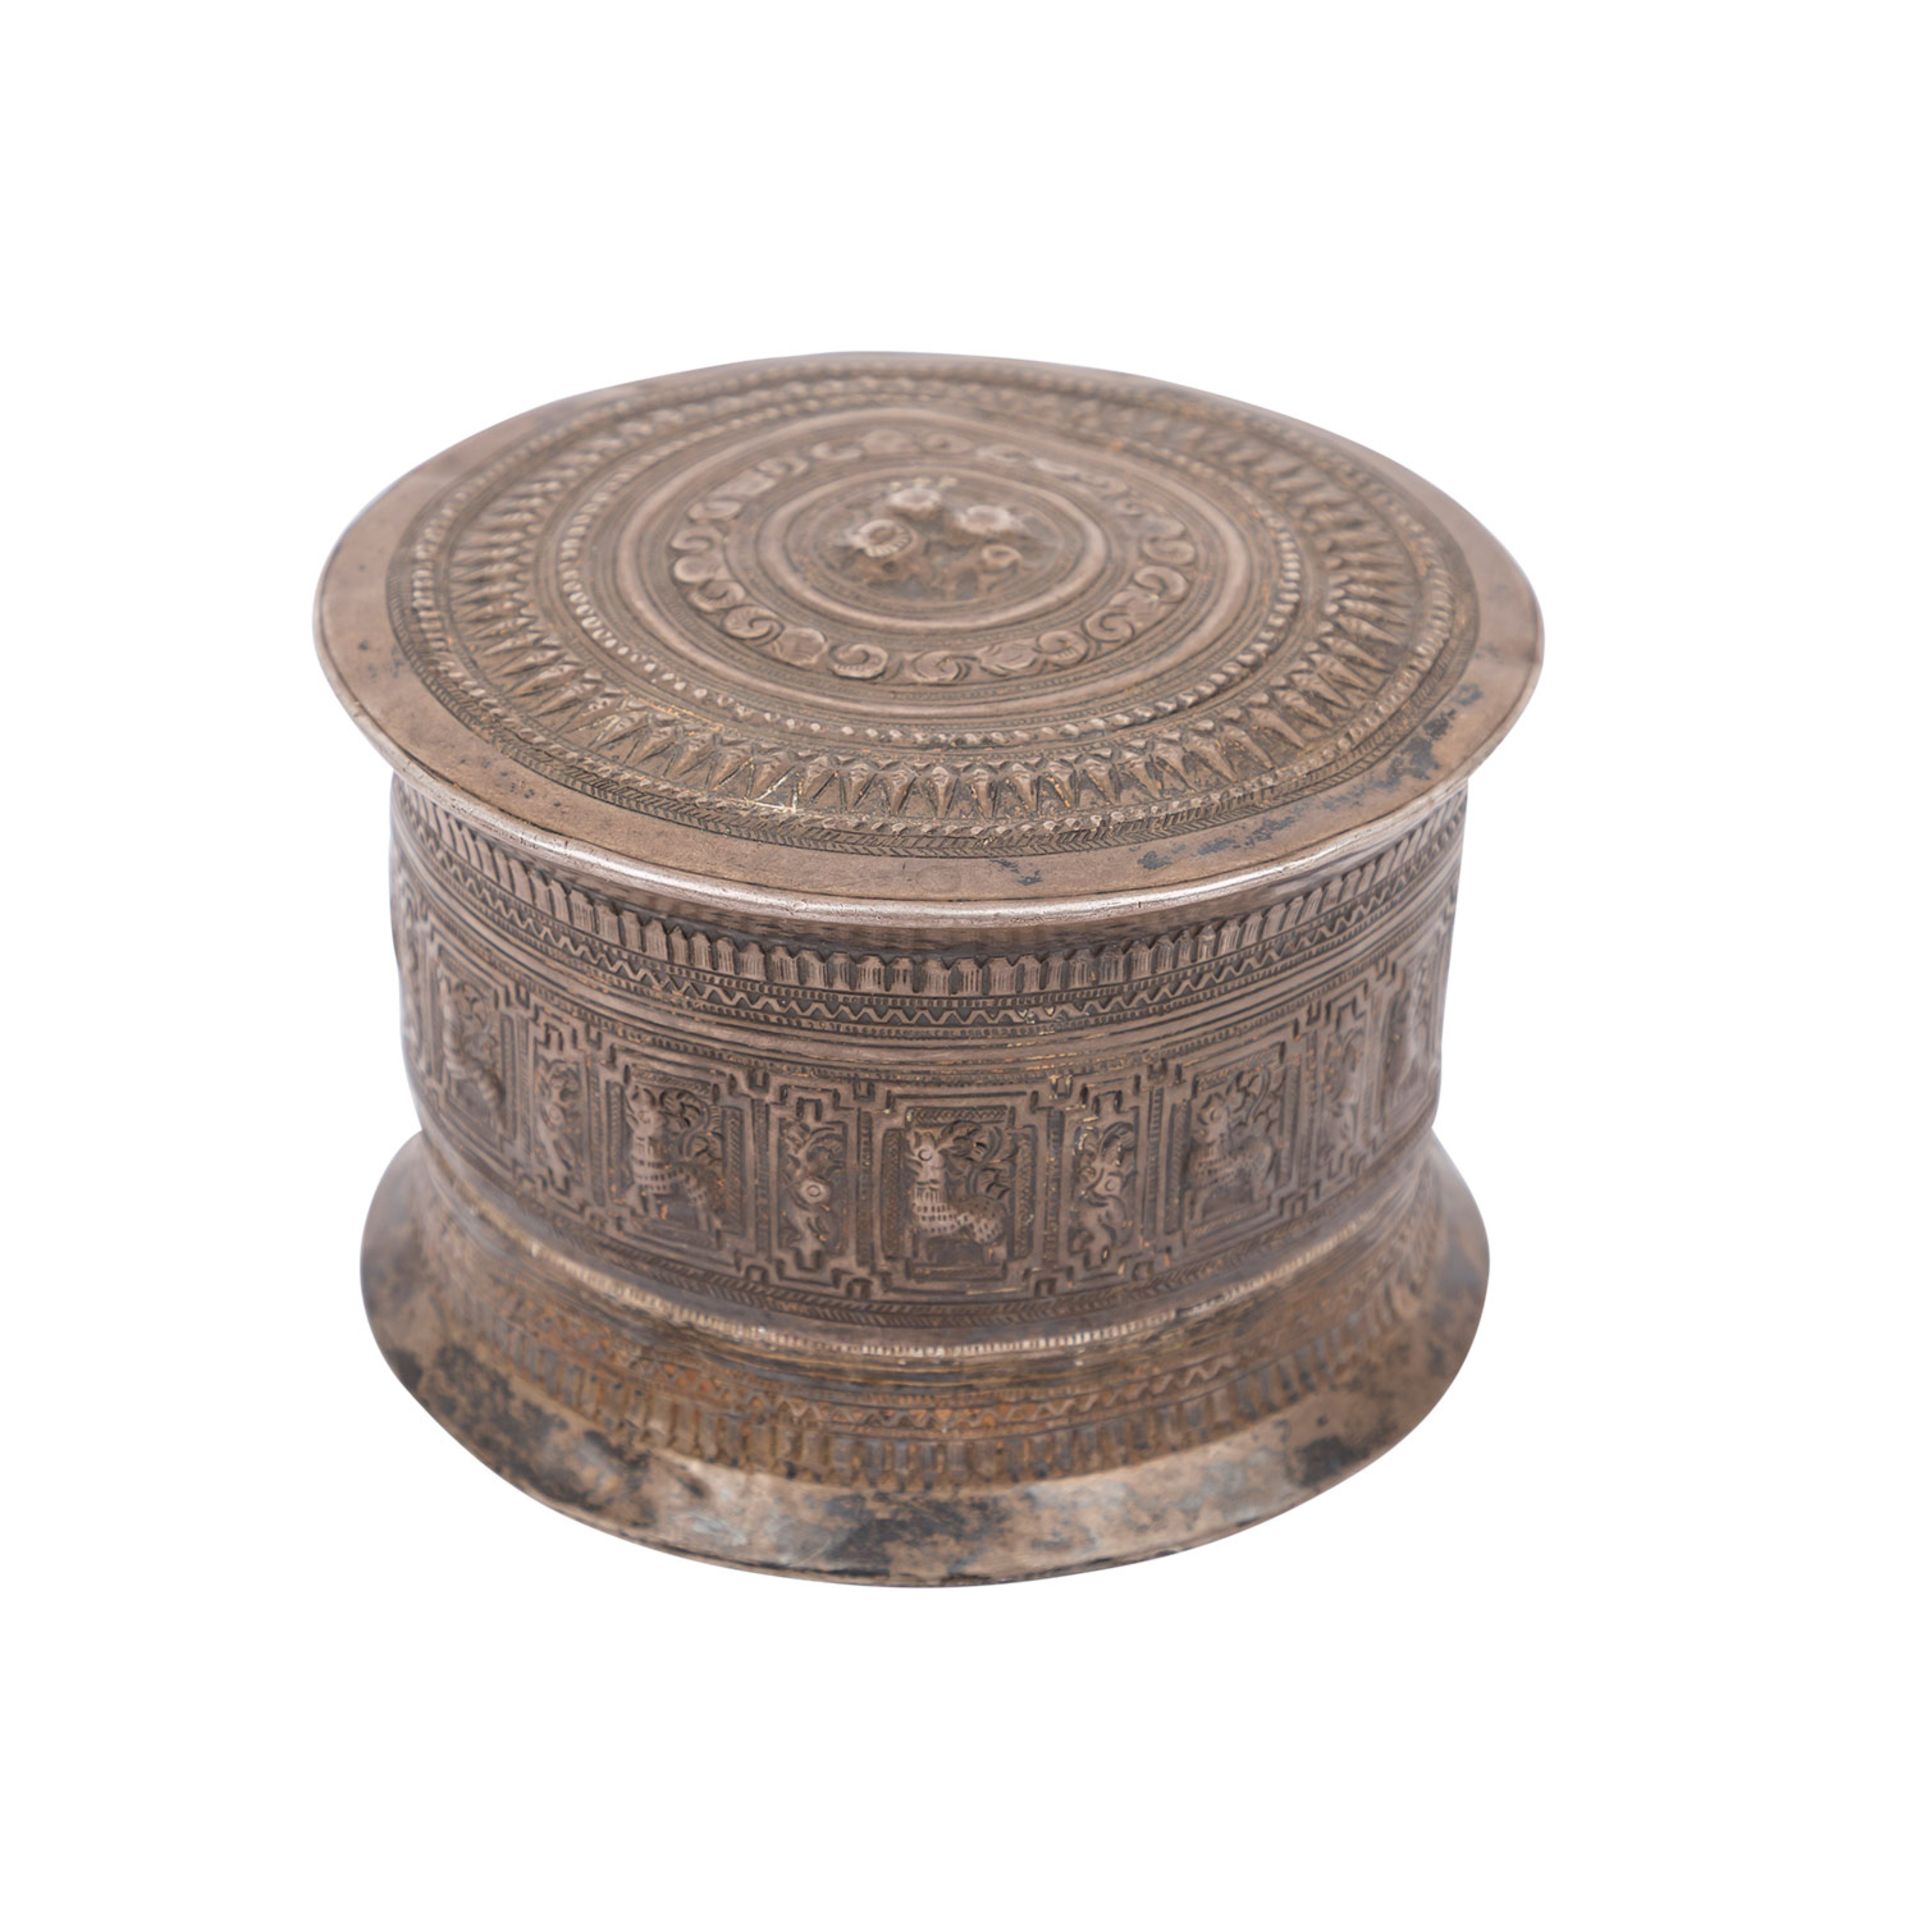 Deckeldose aus Silber. ASIEN/INDIEN.Runde Form mit ornamentalem Reliefdekor. H: 8,5 cm. Alters-